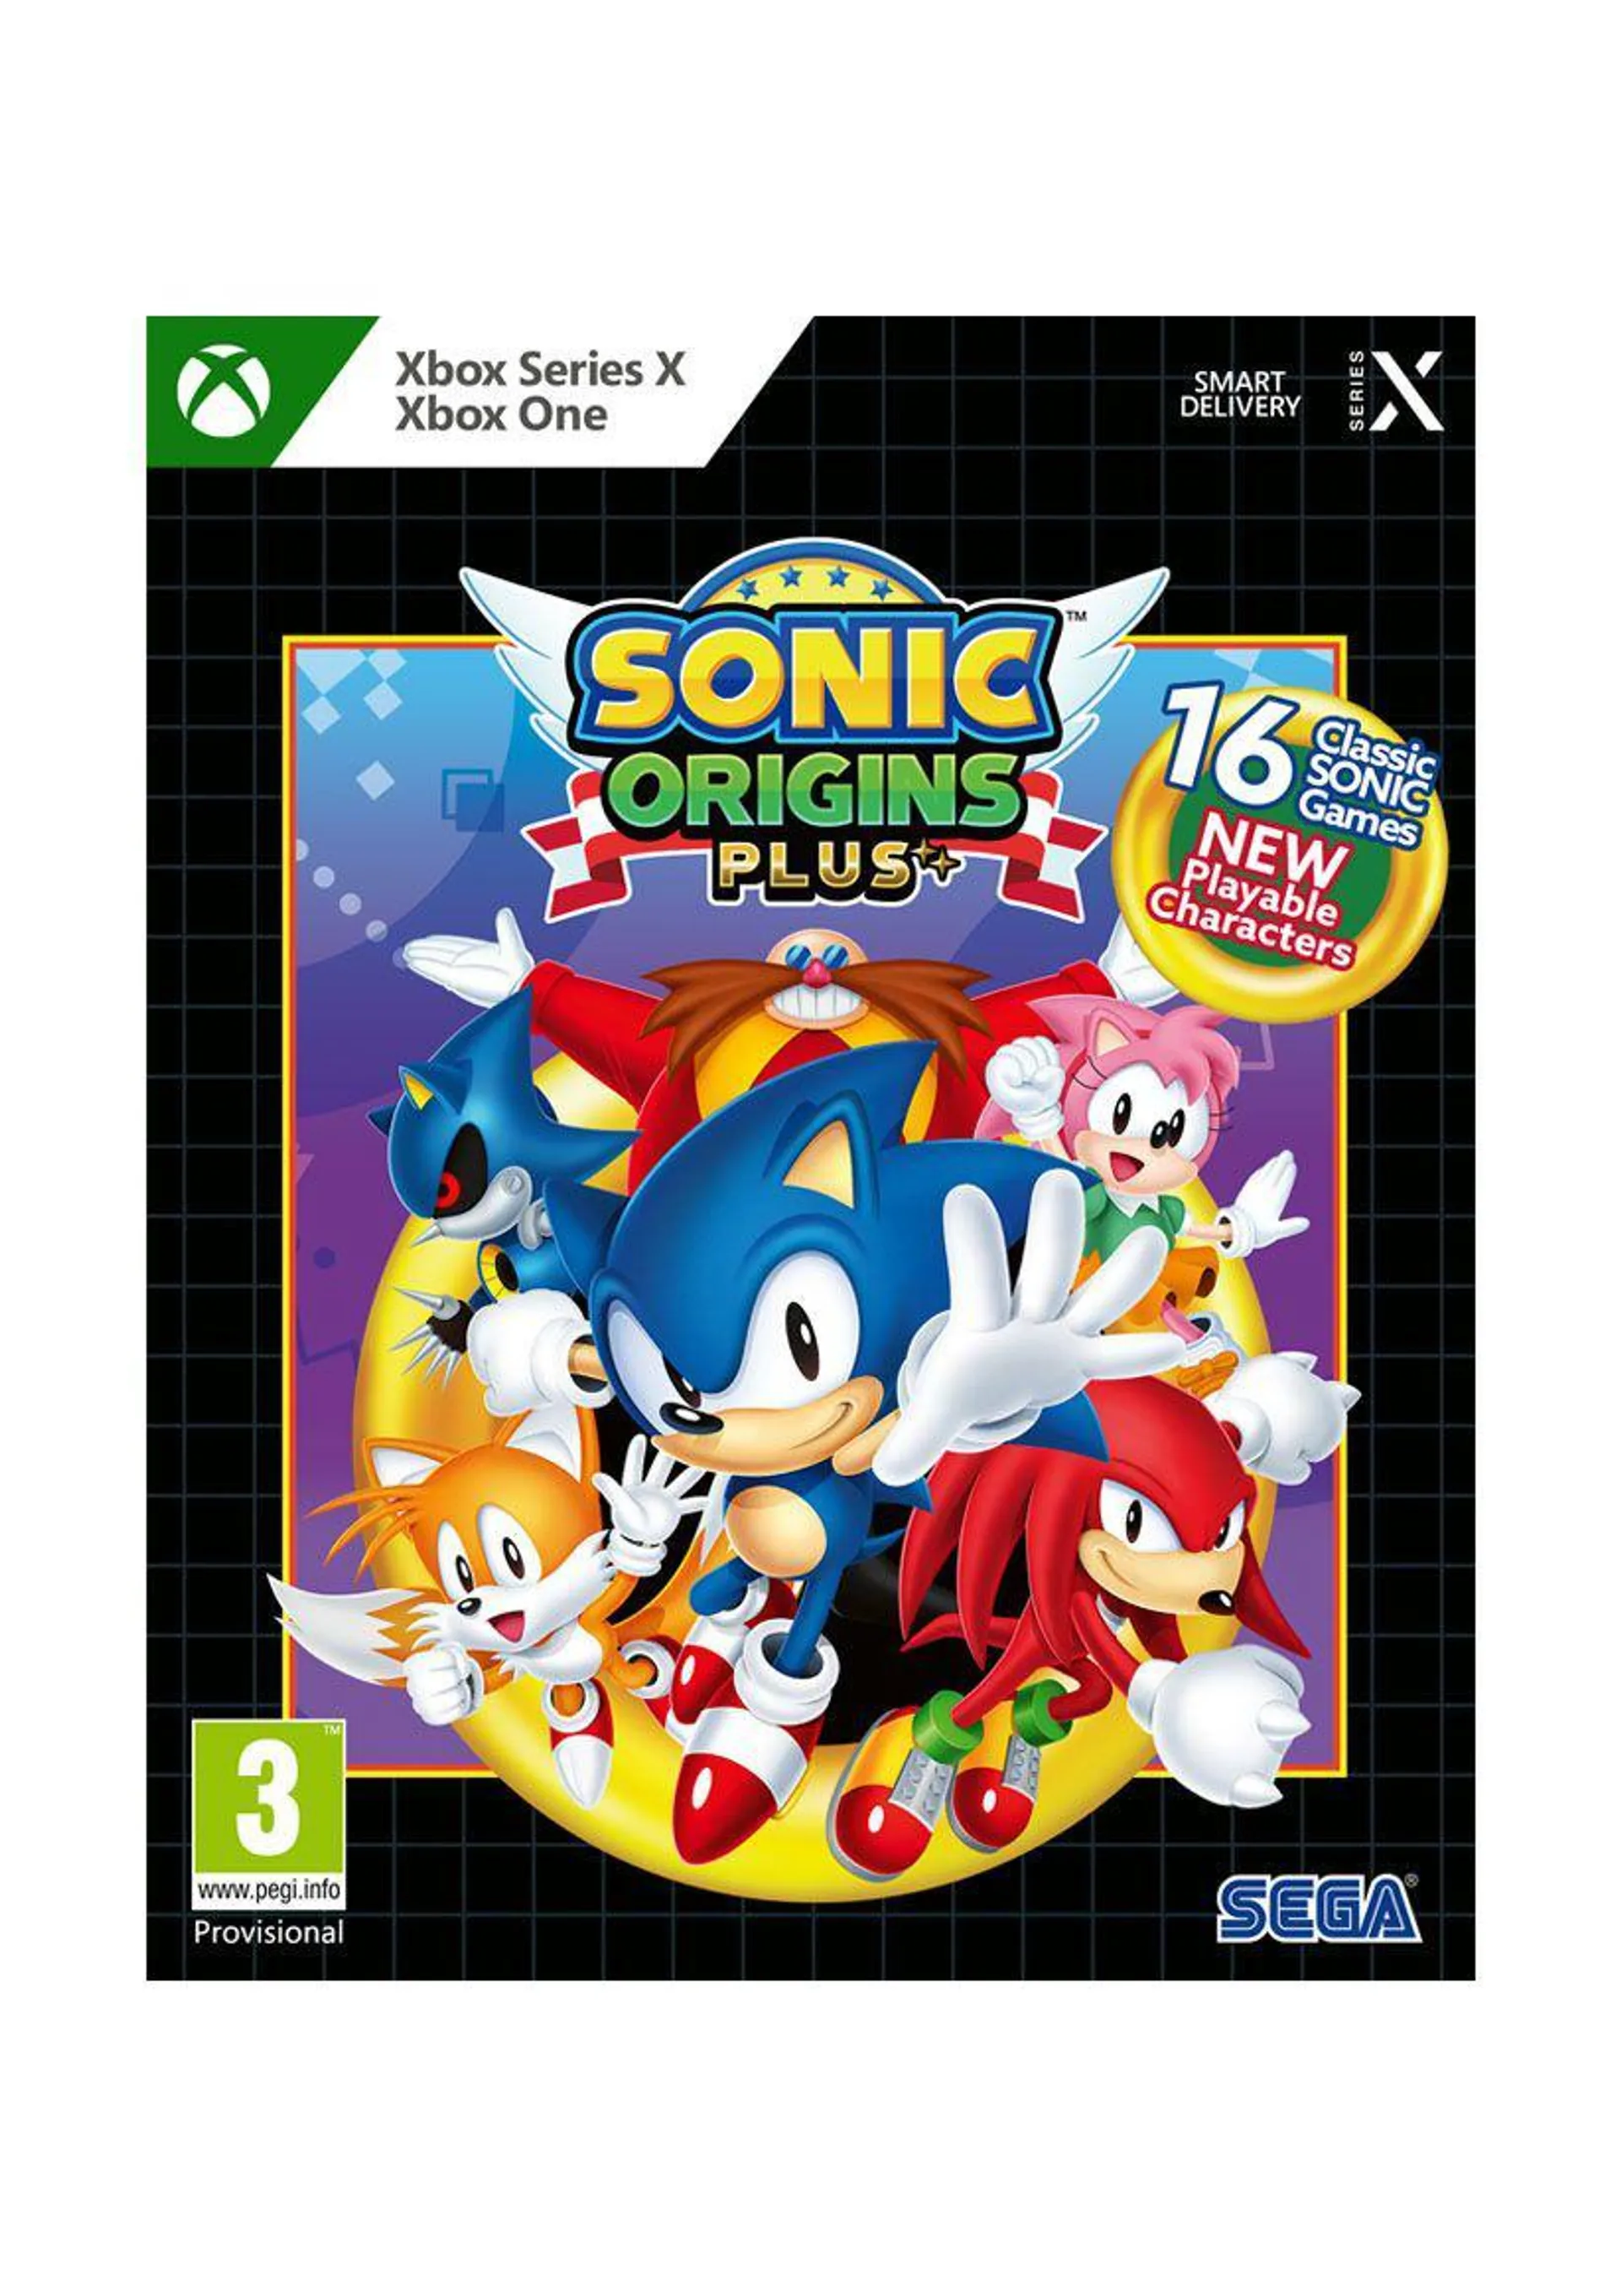 Sonic Origins Plus on Xbox Series X | S